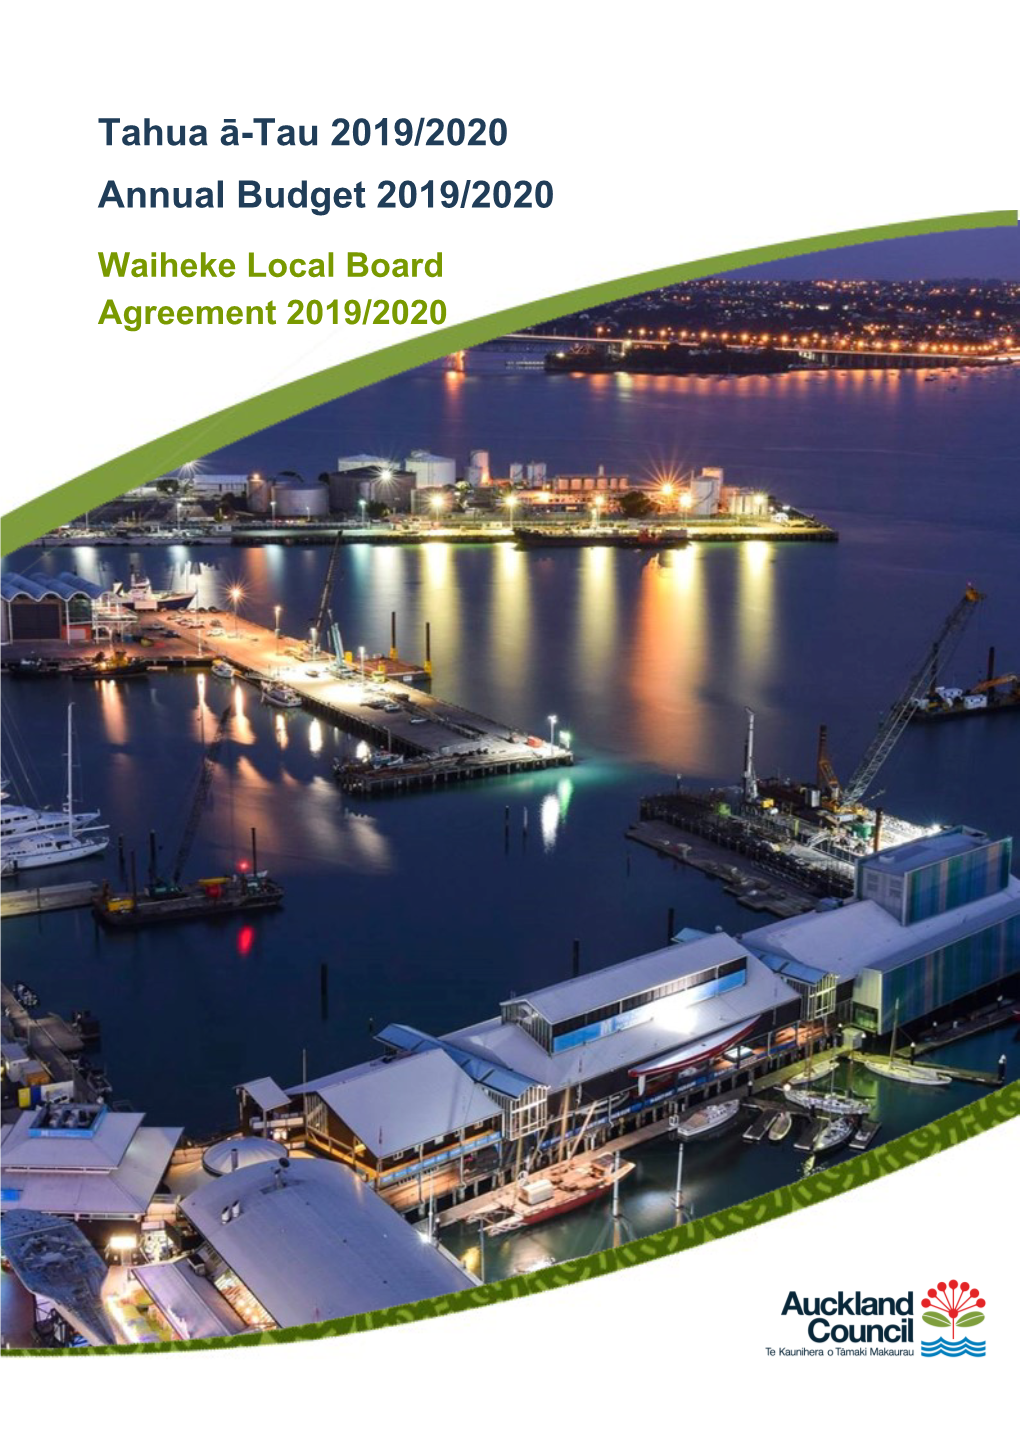 Waiheke Local Board Agreement 2019/2020